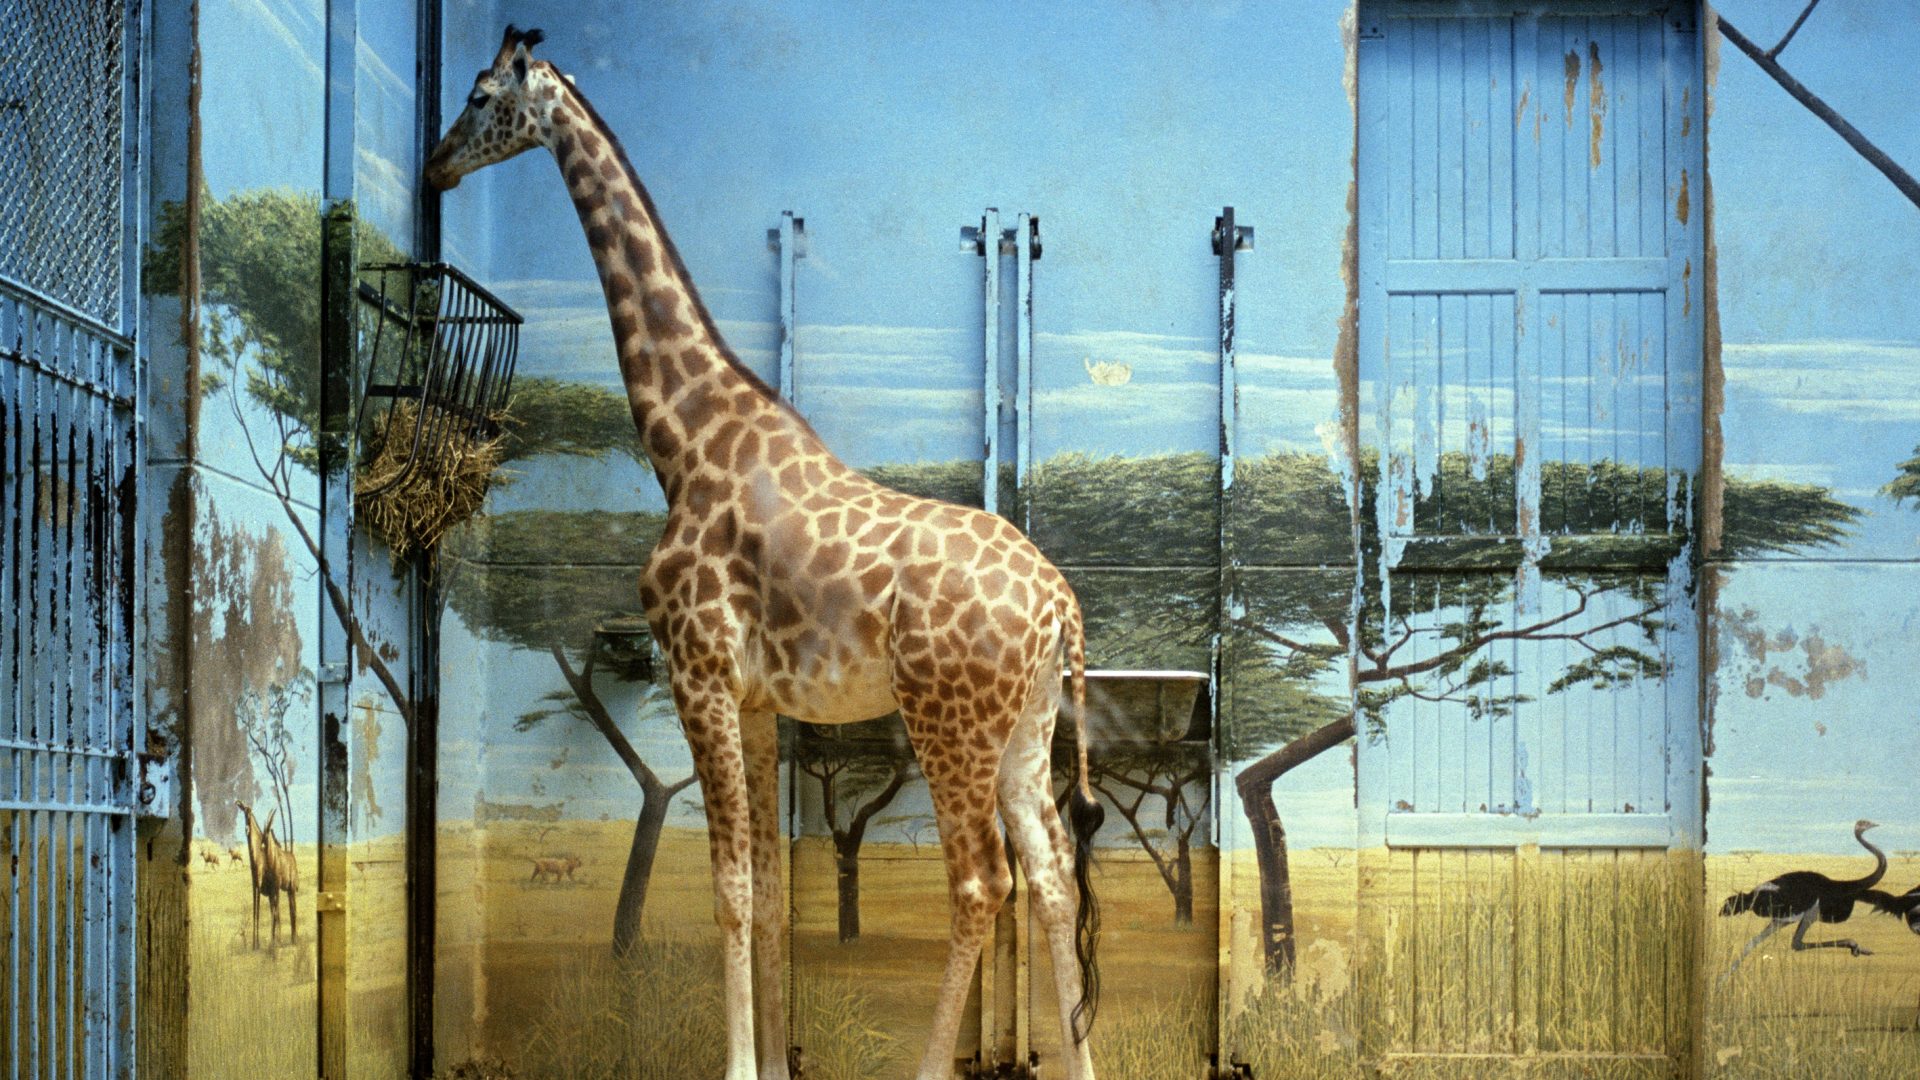 Candida Höfer, Zoologischer Garten Paris II, 1997, (c) Candida Höfer Bildrecht Wien 2017